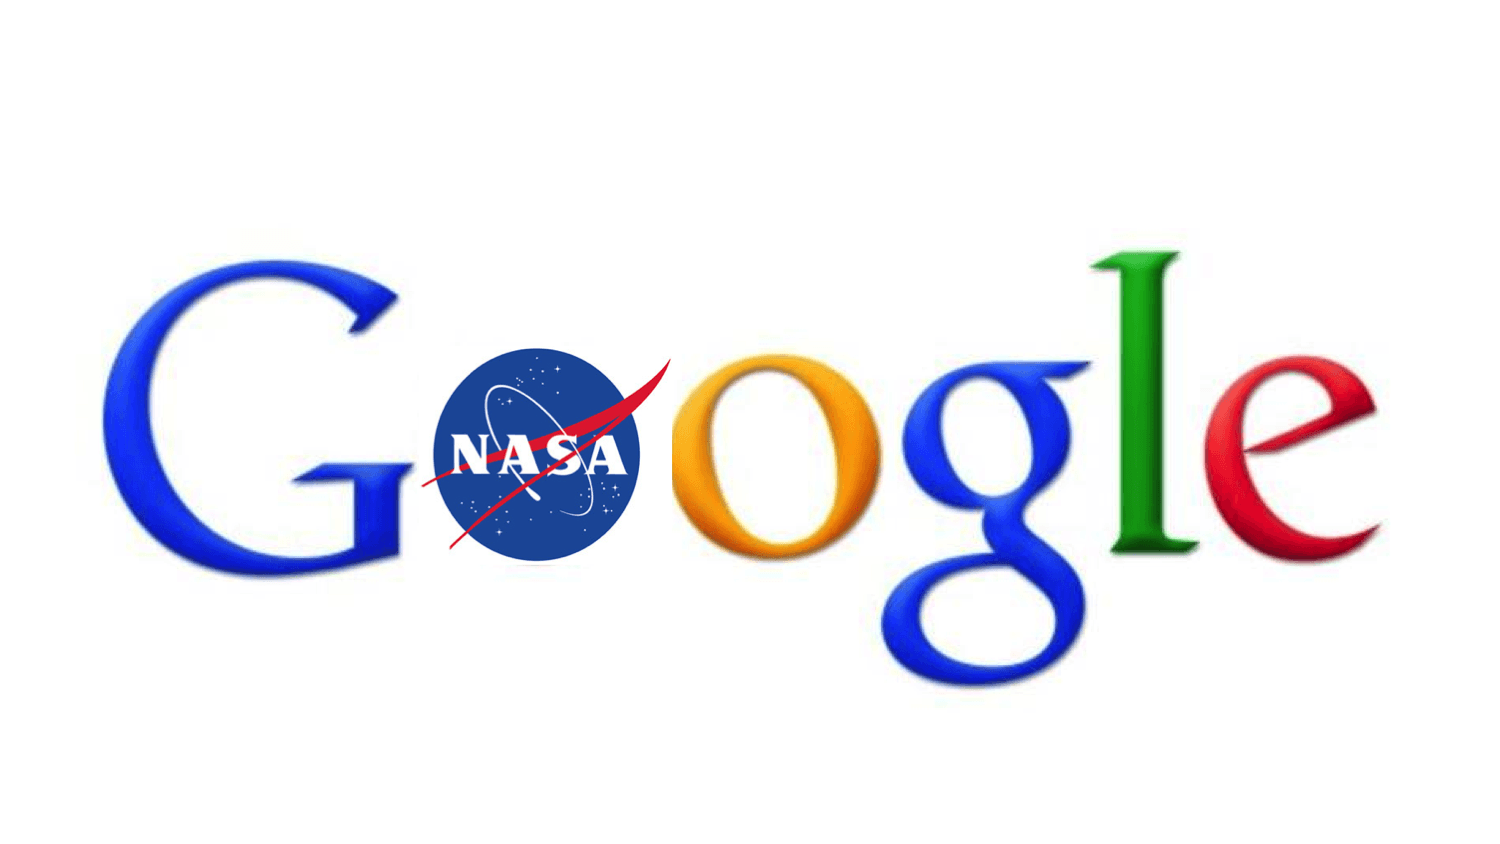 NASA New Logo - Why The New Google NASA Partnership Marks A New Era In The History